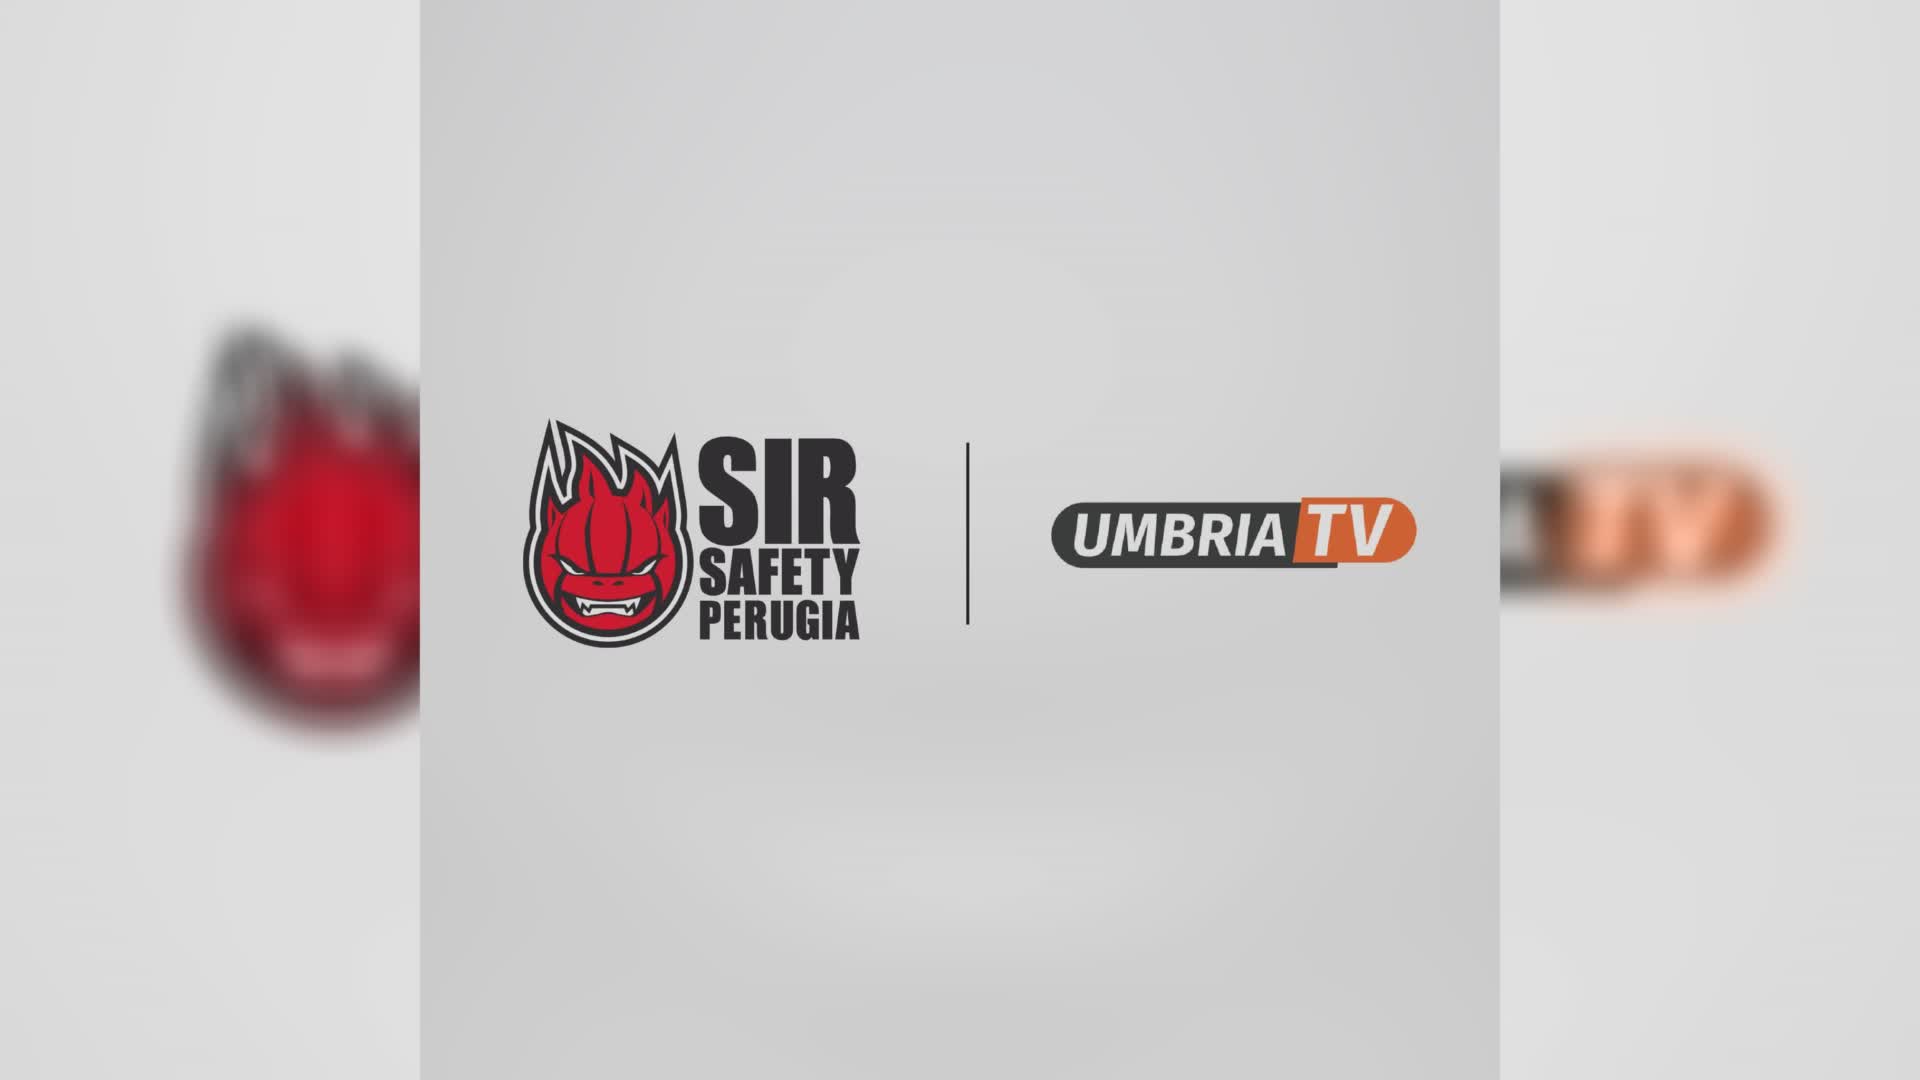 Umbria Tv diventa tv ufficiale della Sir Perugia